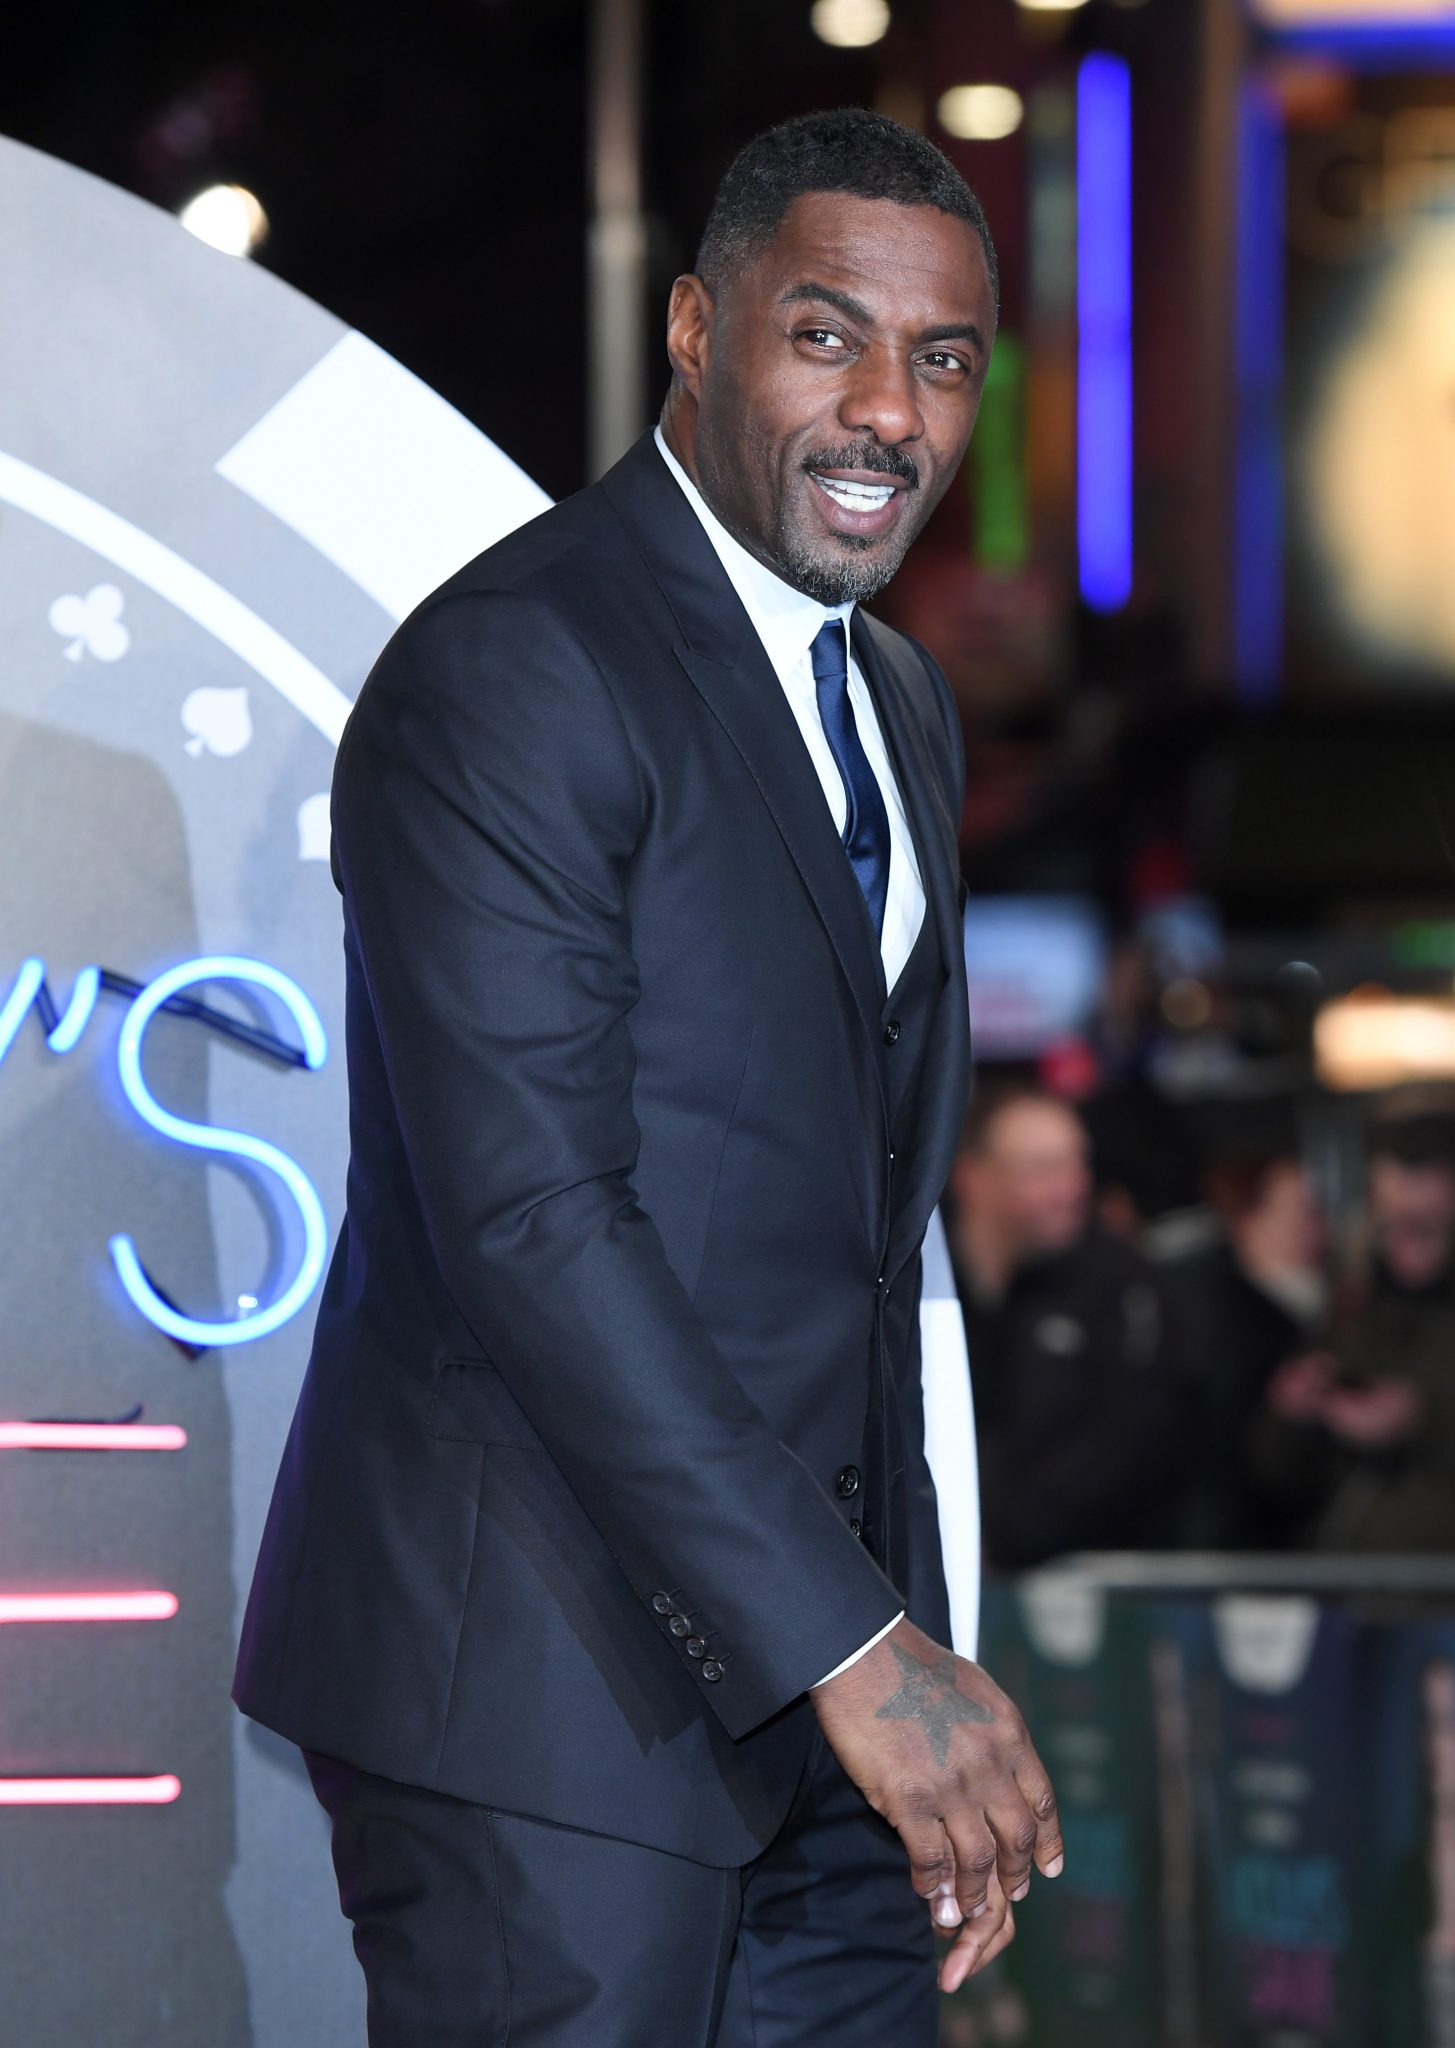 Idris Elba Is Taking Break From Social Media